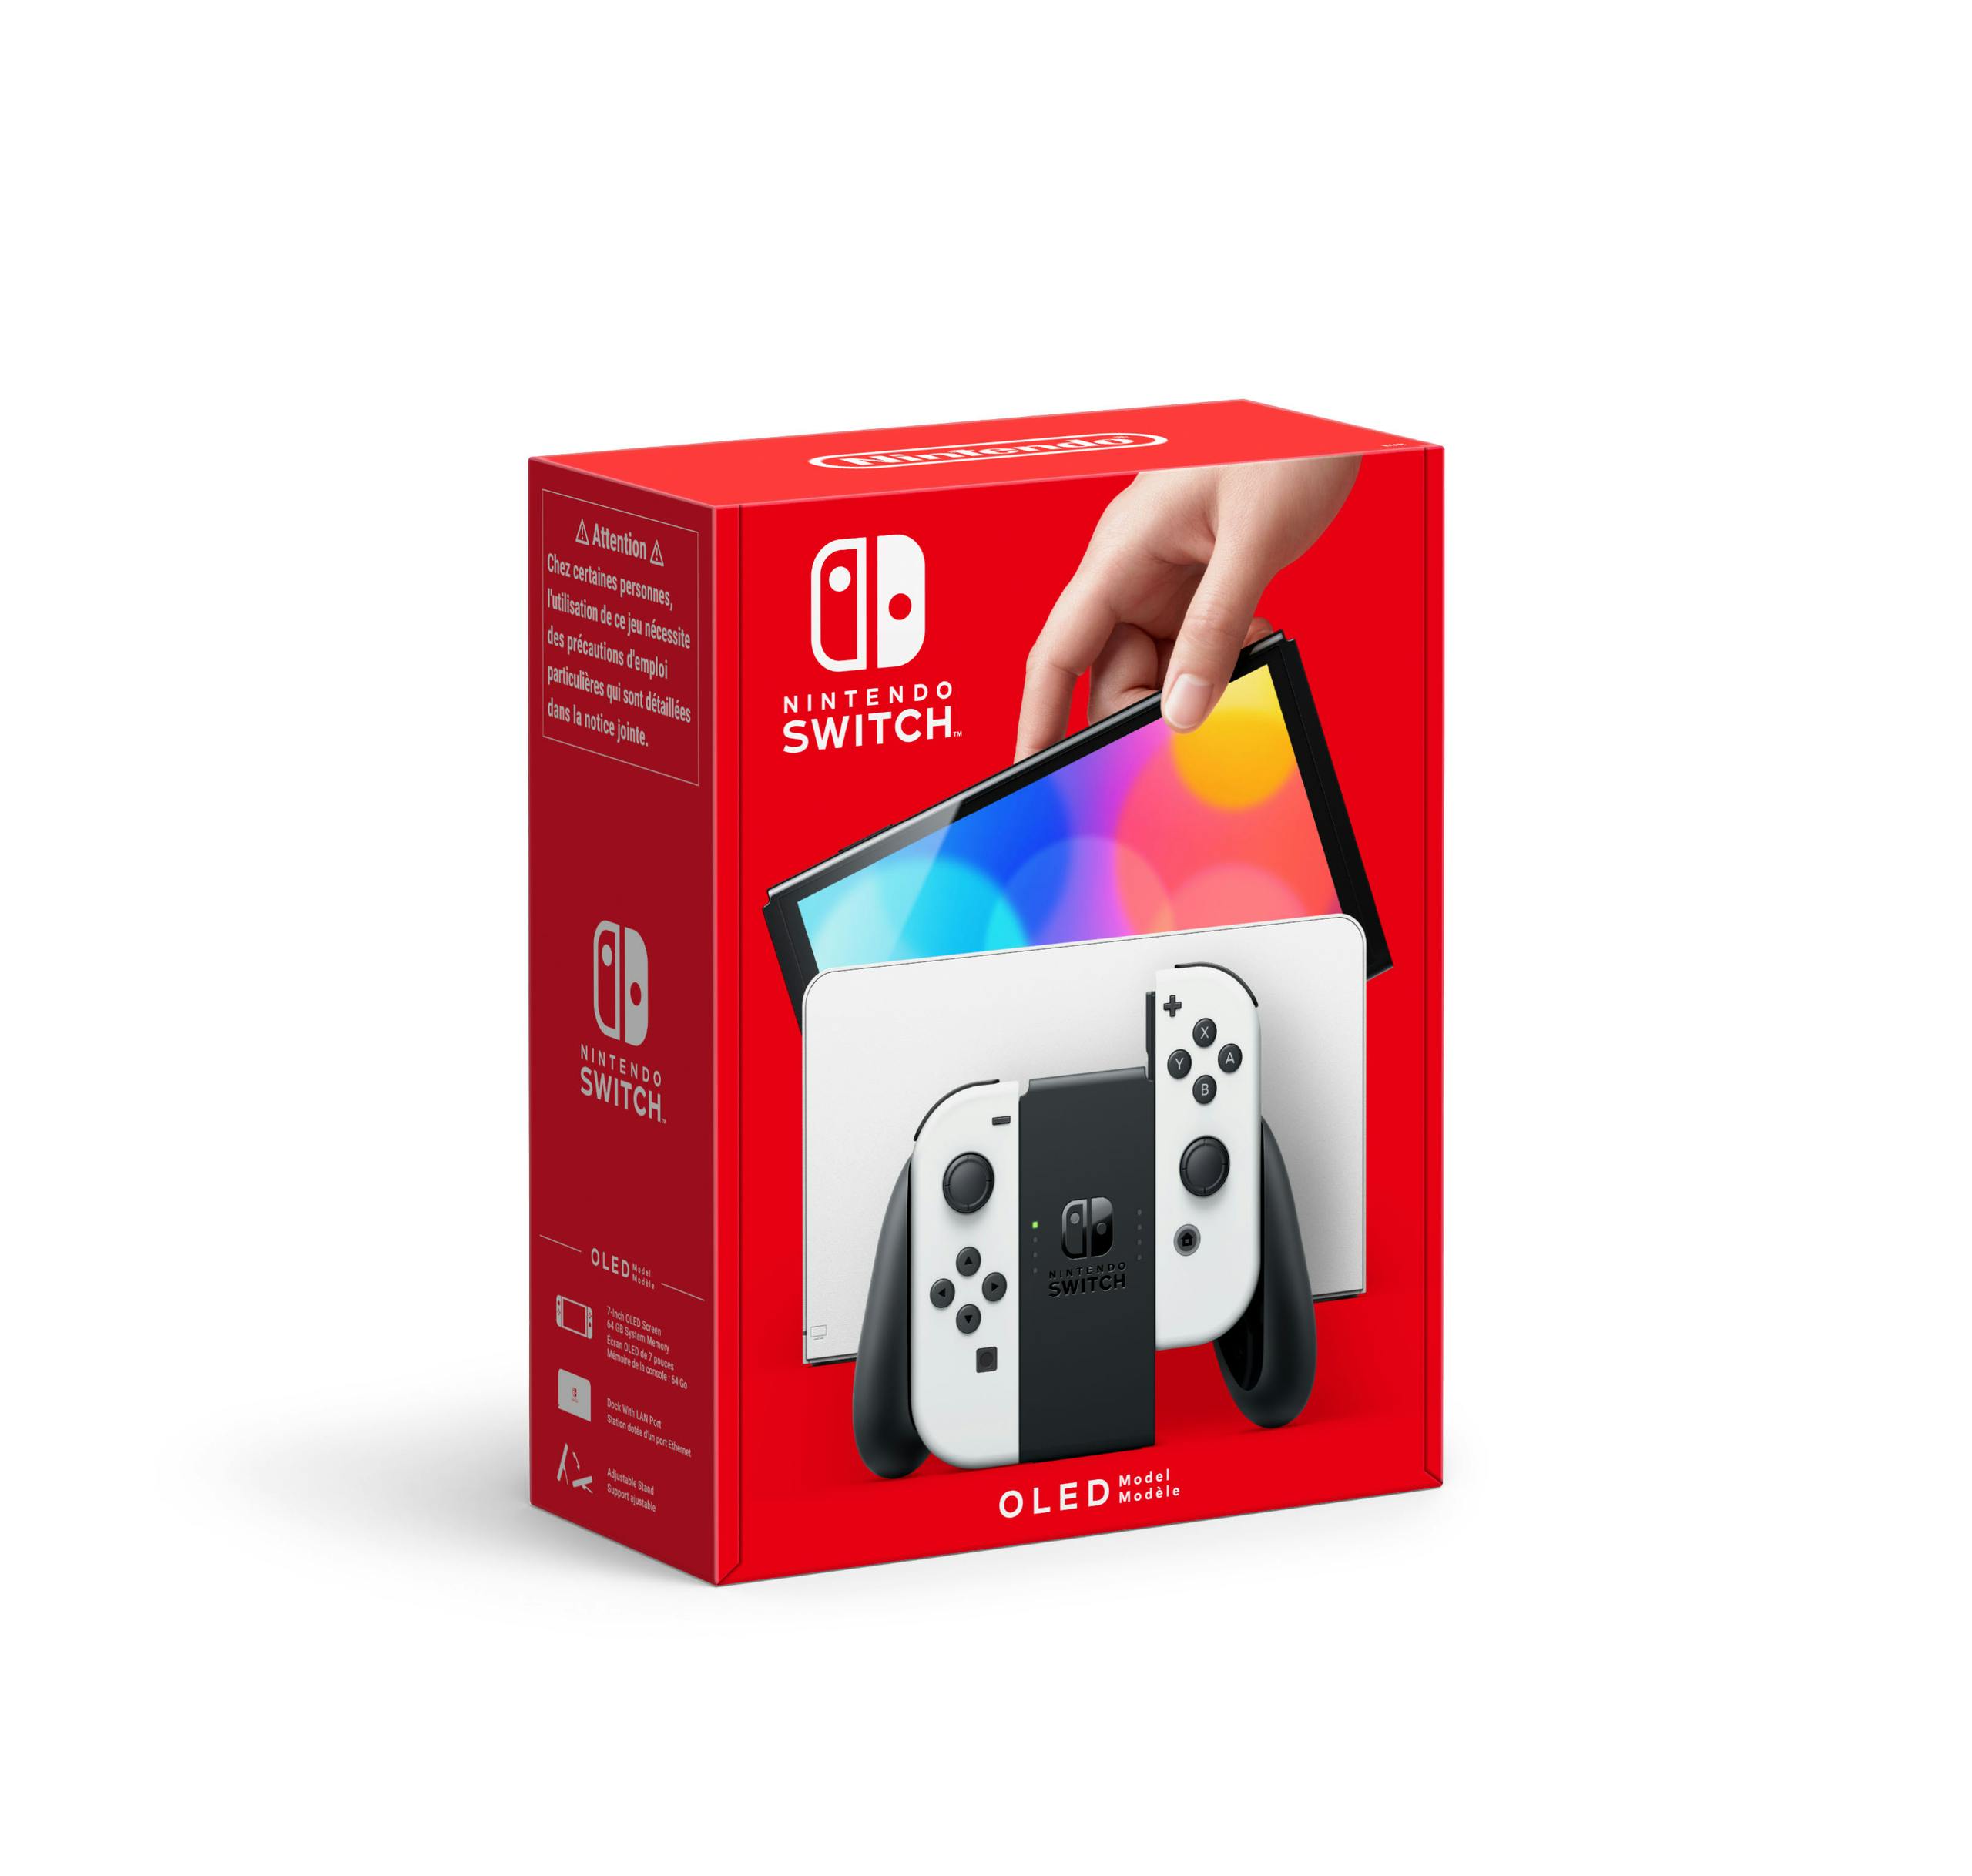 Nintendo Switch Oled Console White